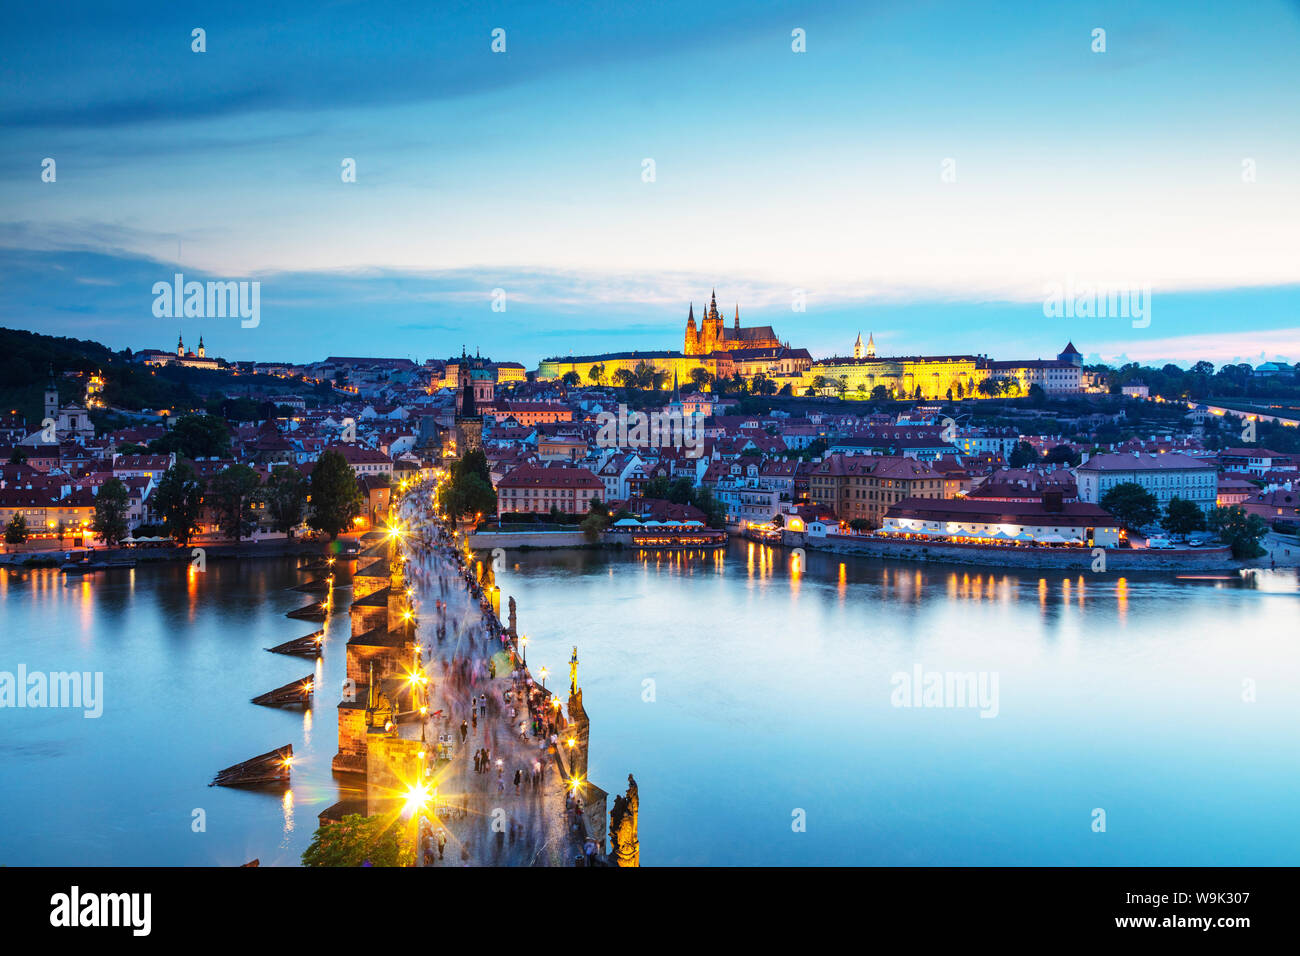 Le Pont Charles, le château de Prague et cathédrale Saint-Guy de Prague, classé au Patrimoine Mondial de l'UNESCO, la Bohême, République Tchèque, Europe Banque D'Images